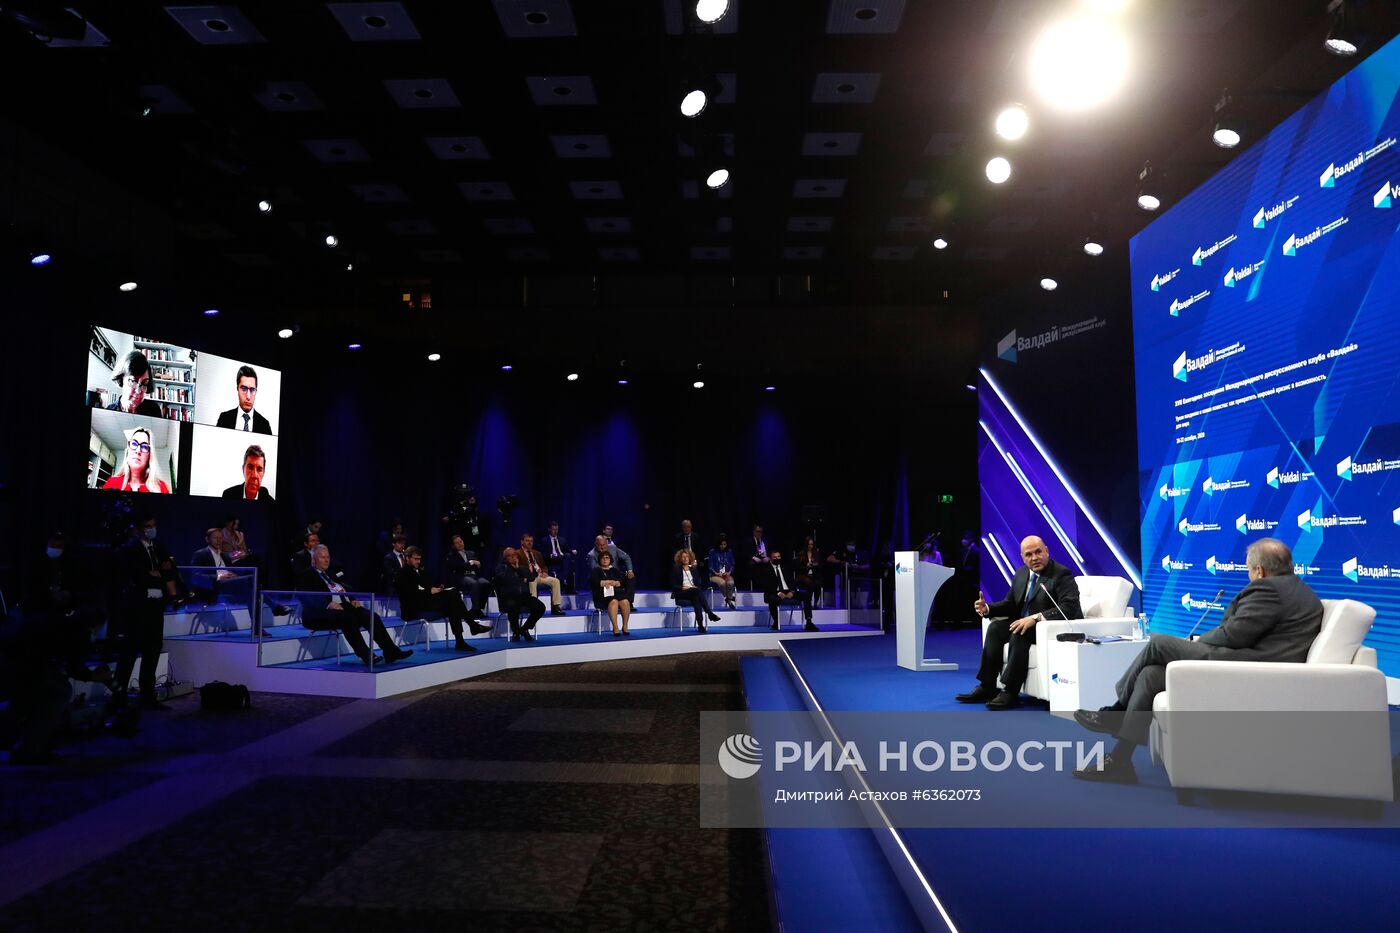 Премьер-министр РФ М. Мишустин принял участие в заседании международного дискуссионного клуба "Валдай".